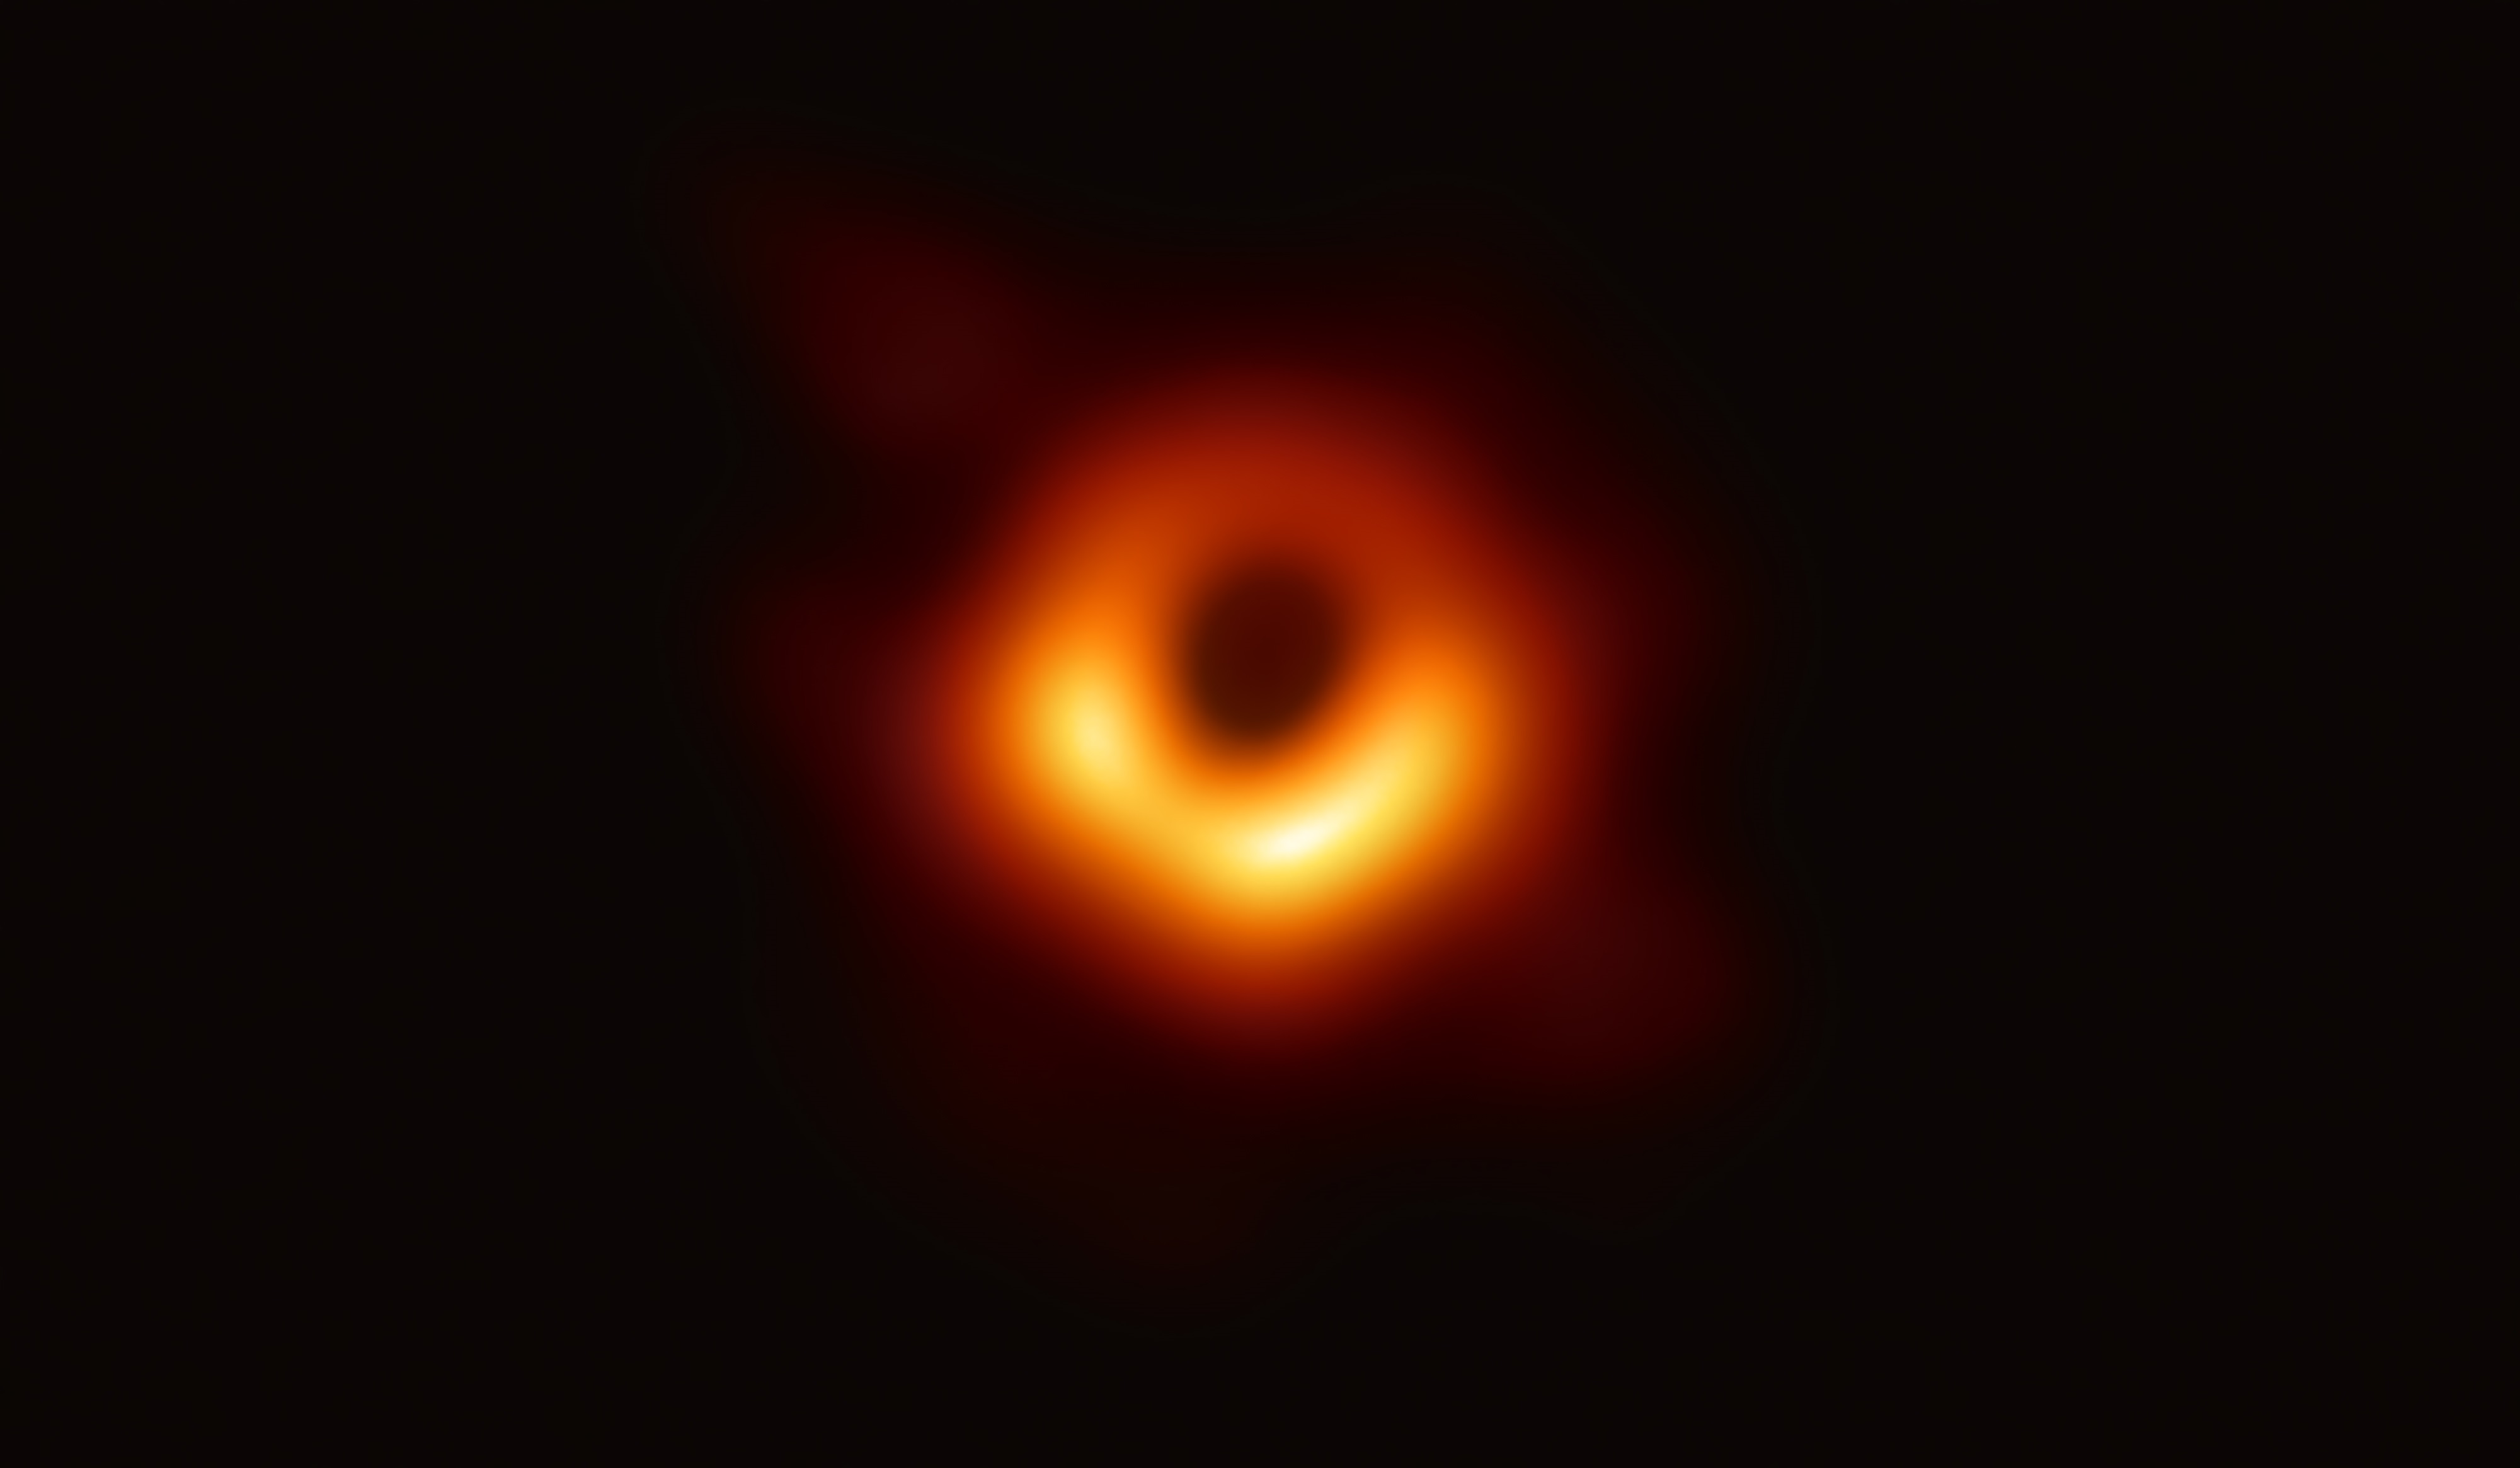 أول صورة للثقب الأسود (مواقع التواصل)